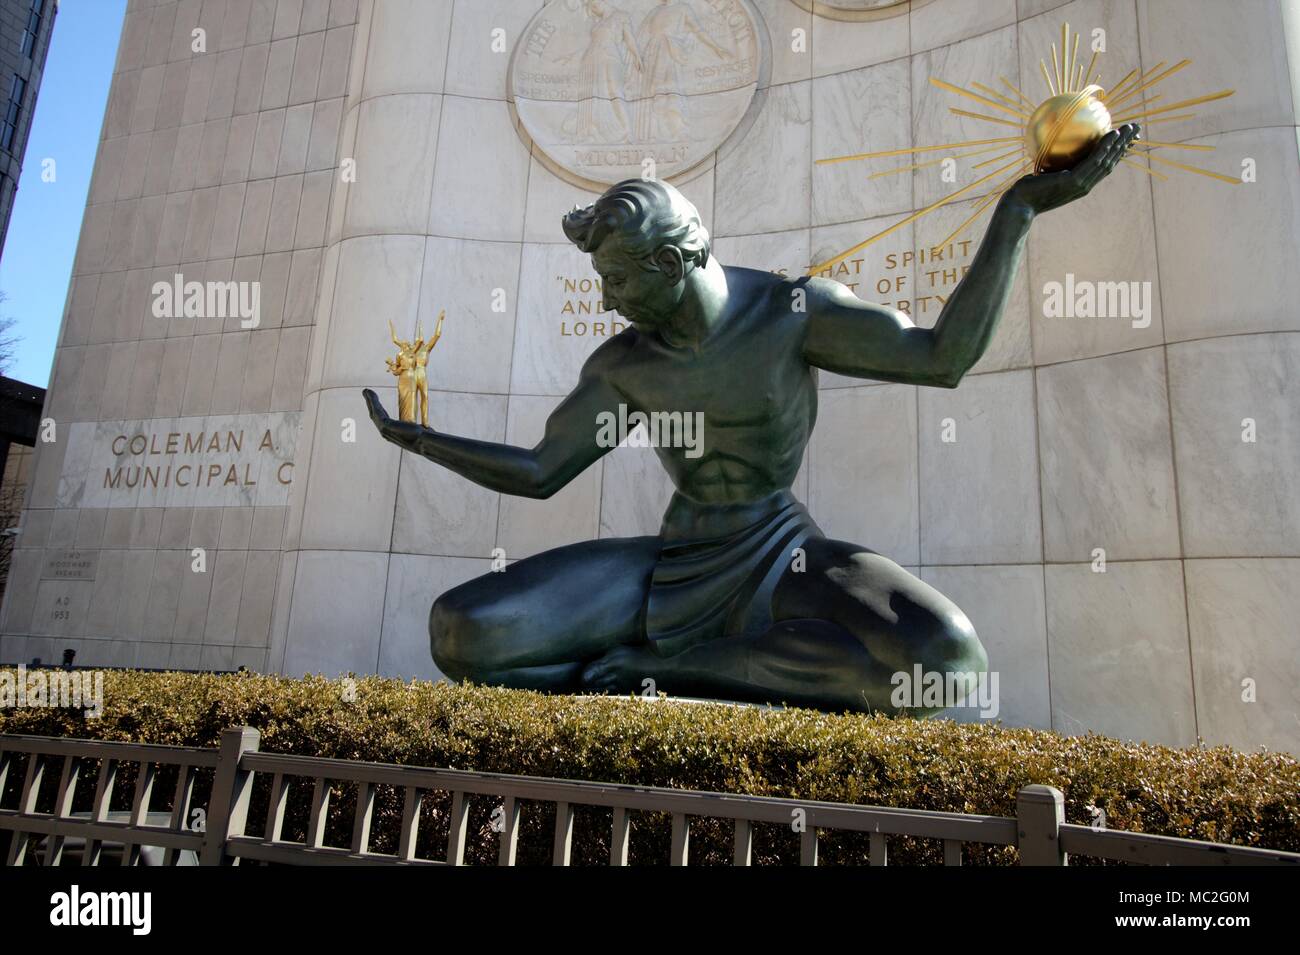 Detroit, Michigan, USA - Mars 22, 2018 : l'esprit de Detroit, à la Coleman un jeune Centre municipal. La statue de bronze a été commandé par la ville Banque D'Images